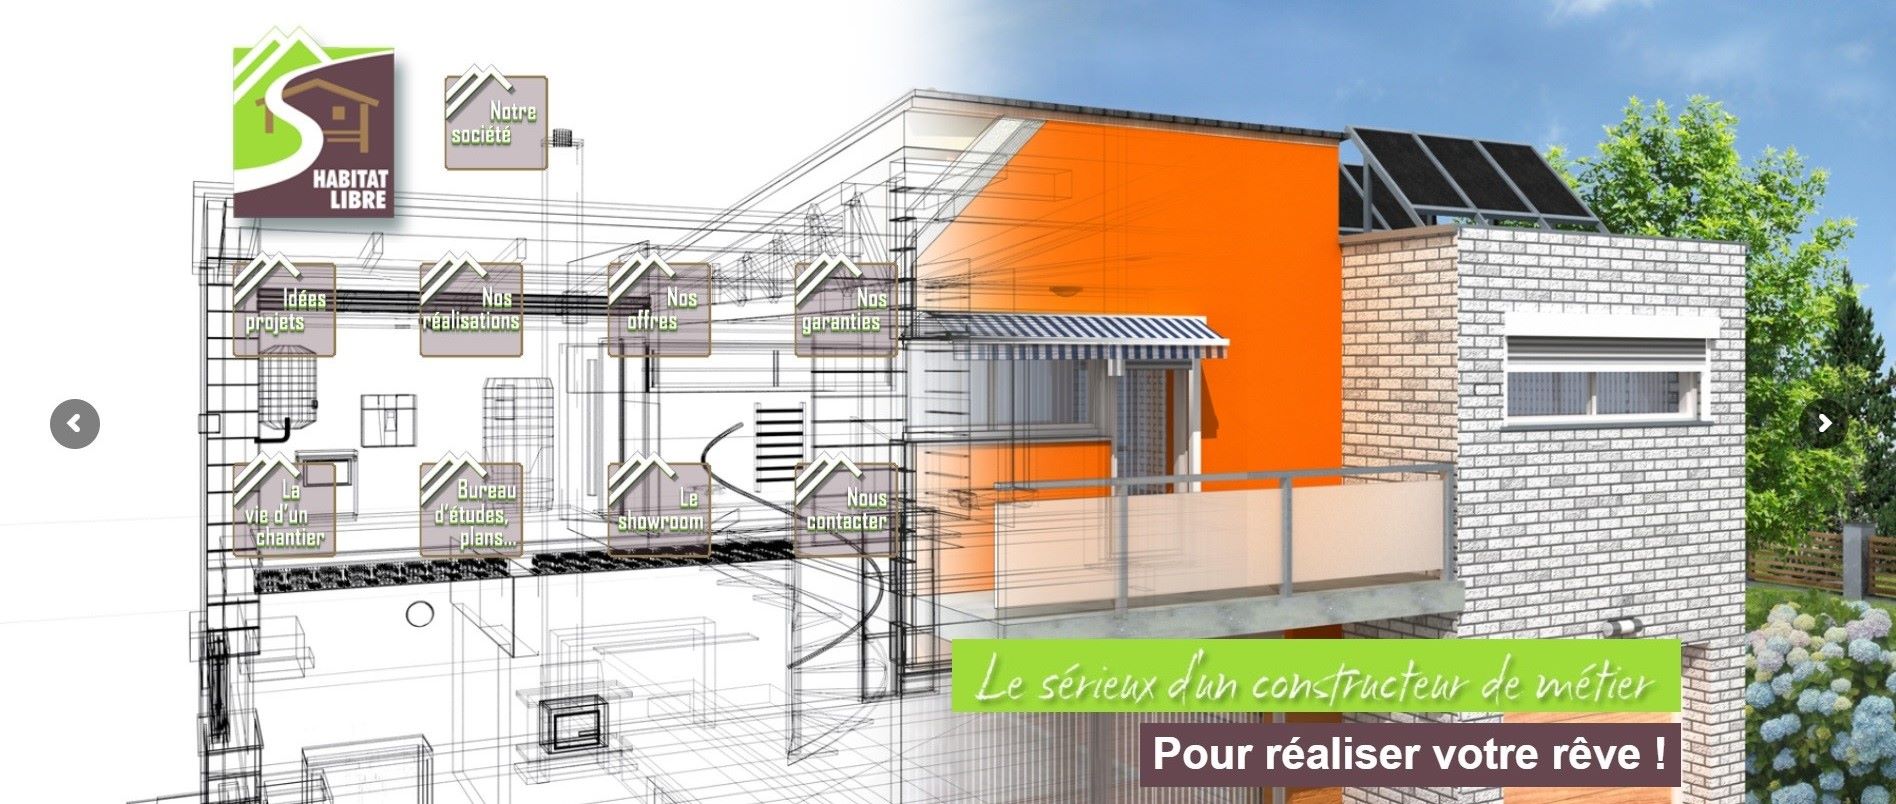  Habitat Libre - Constructeur de Maison à Bourg-en-Bresse